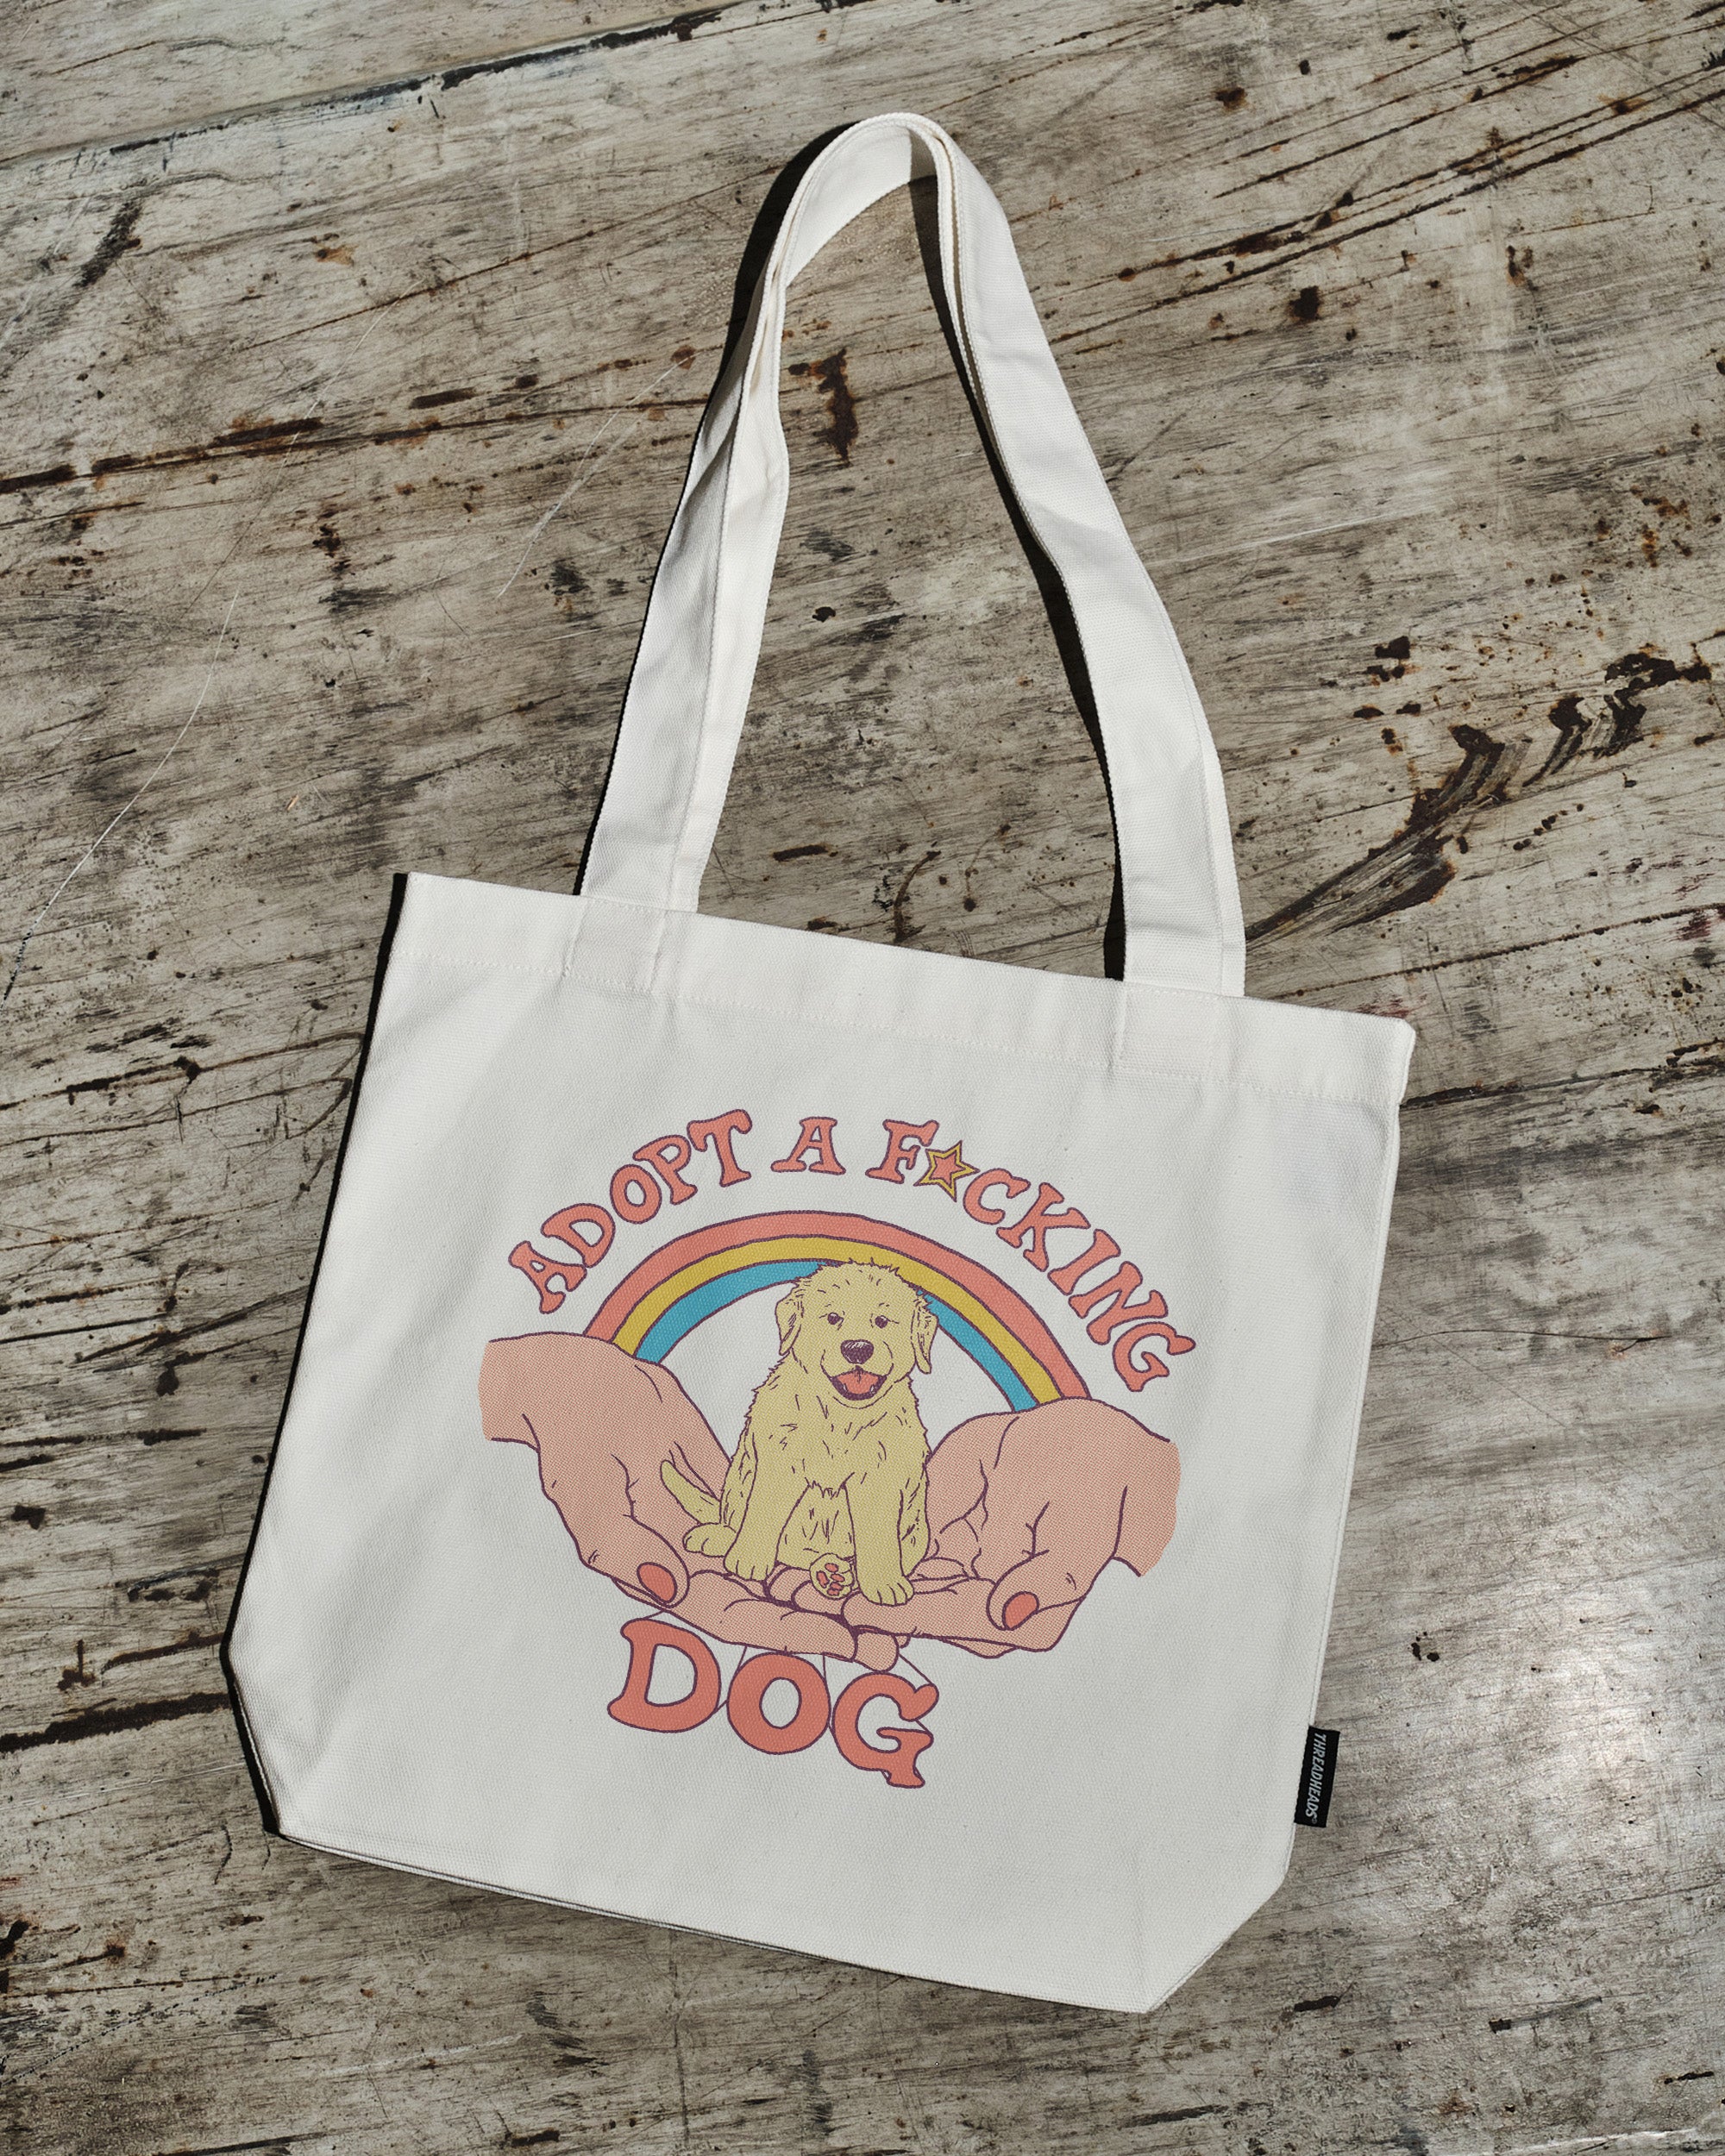 Adopt a F-cking Dog Tote Bag